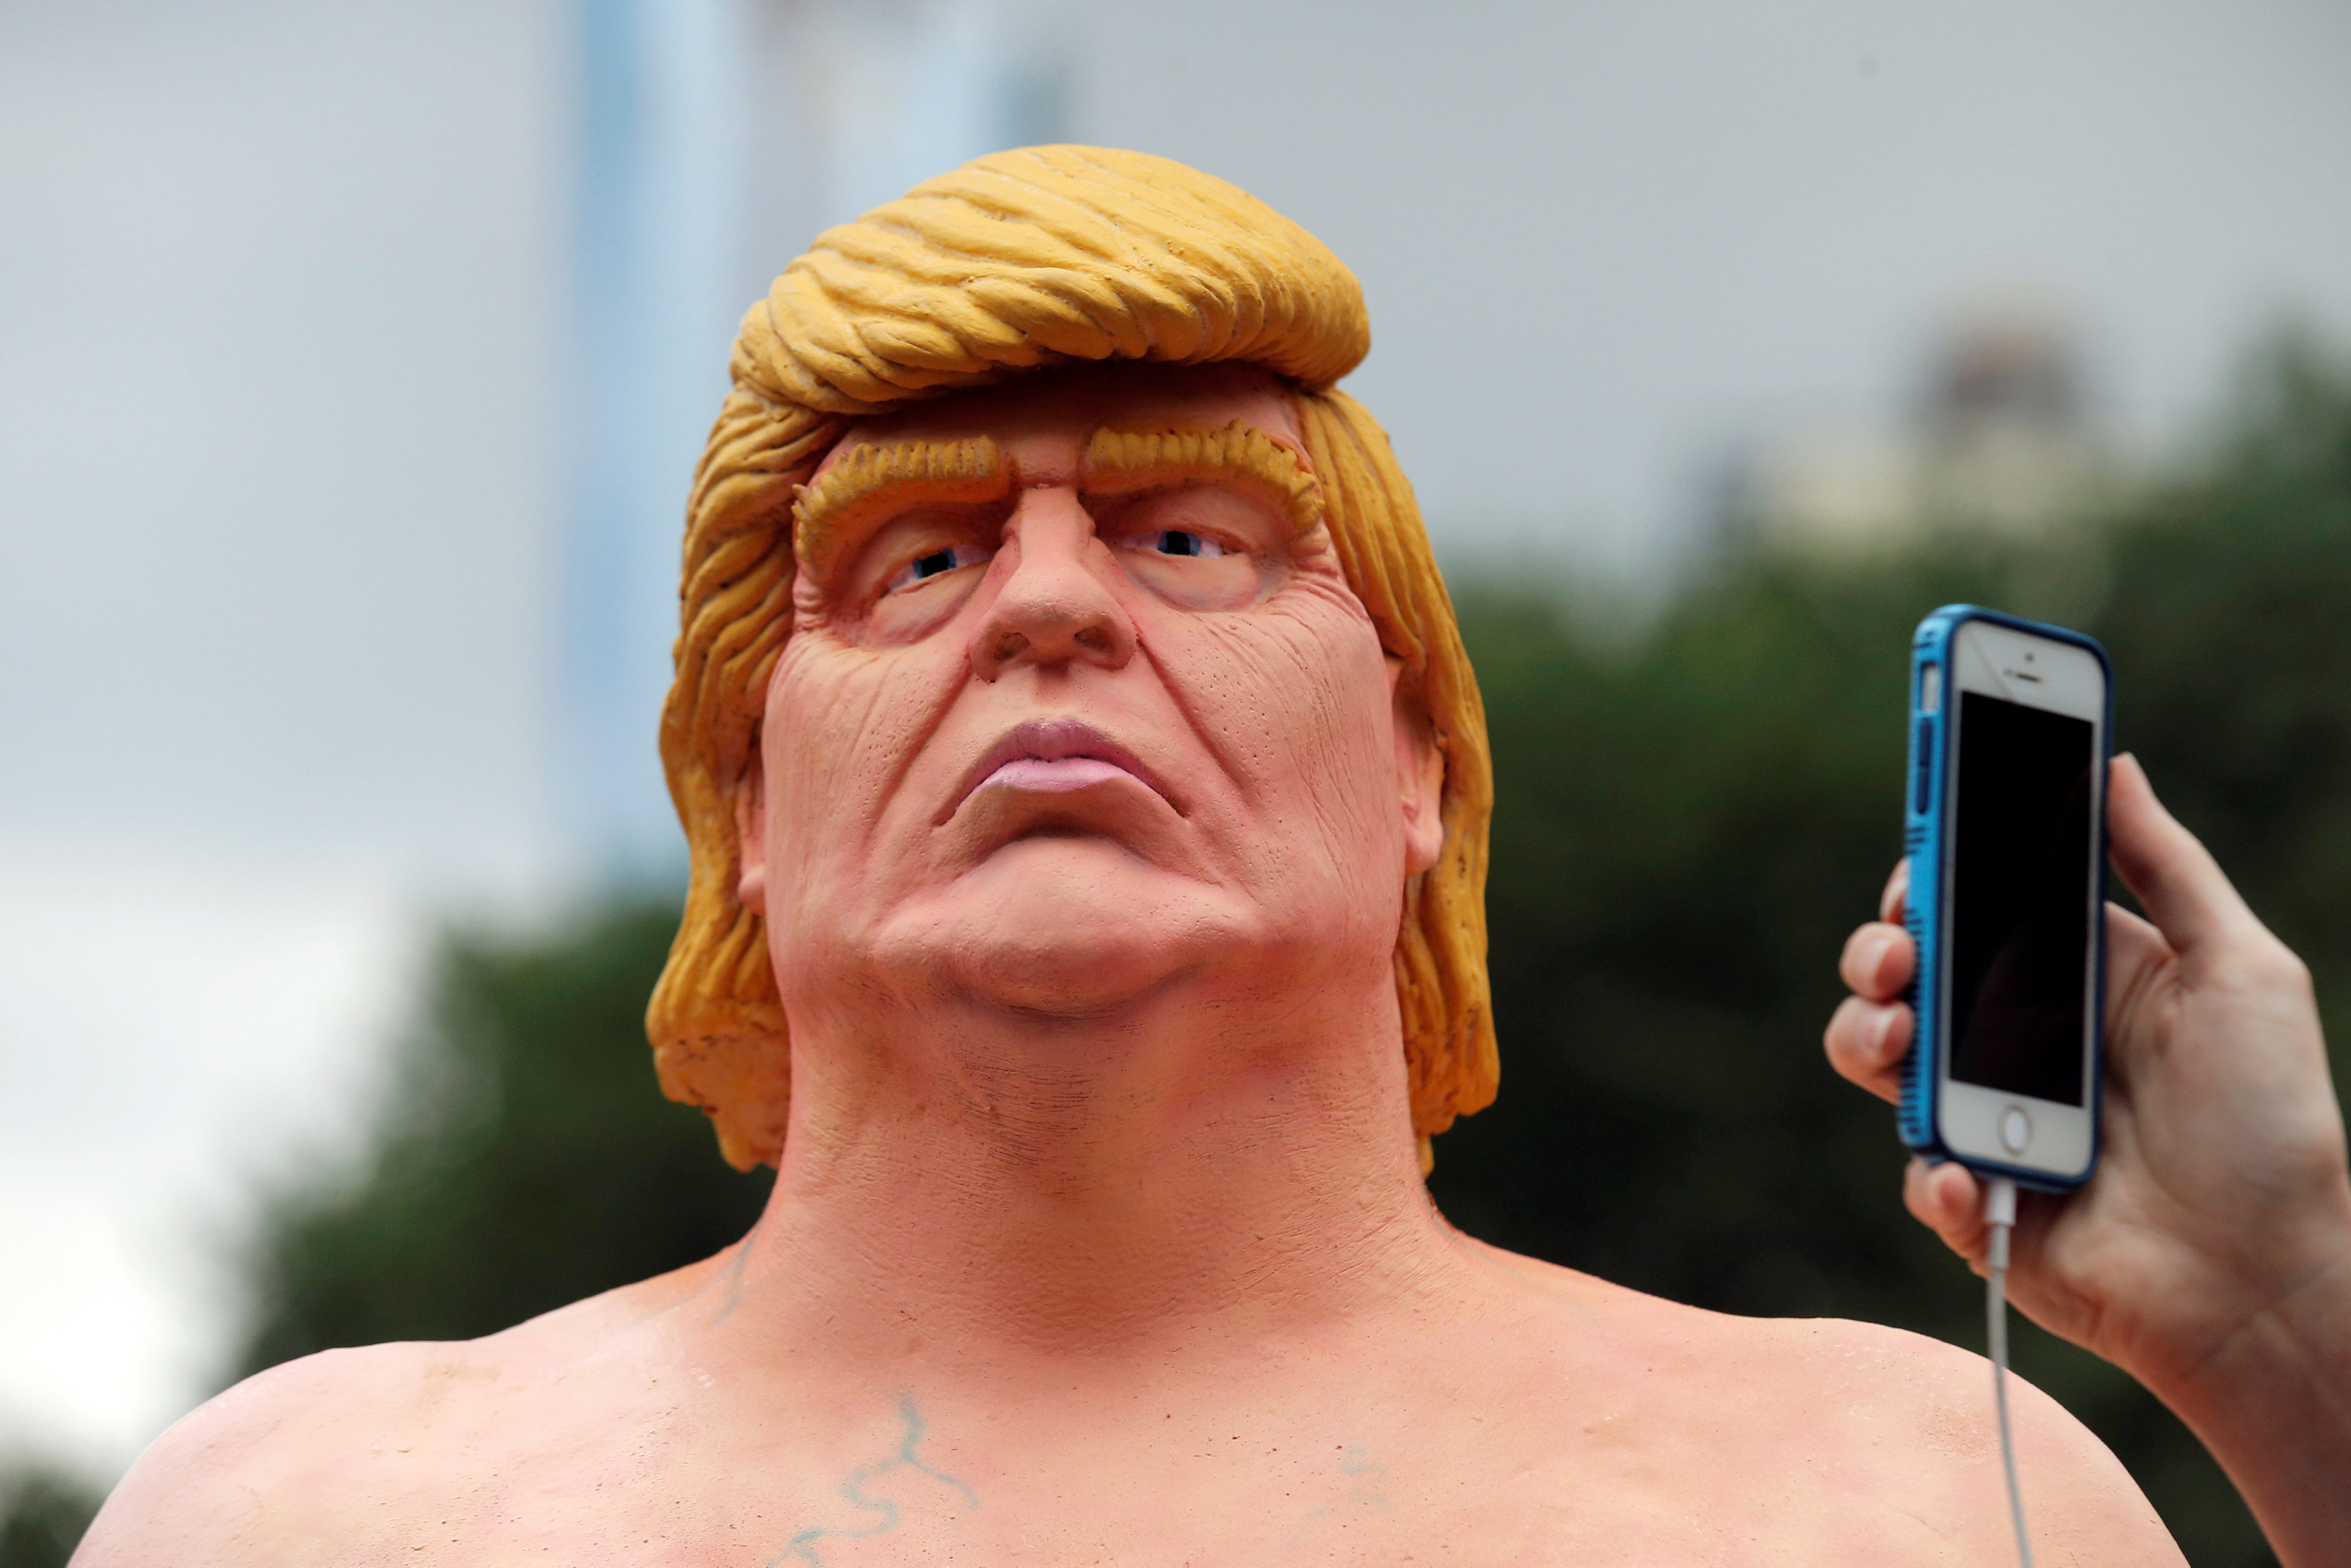 Σε δημοπρασία γυμνό άγαλμα του Τραμπ, σε φυσικό μέγεθος…